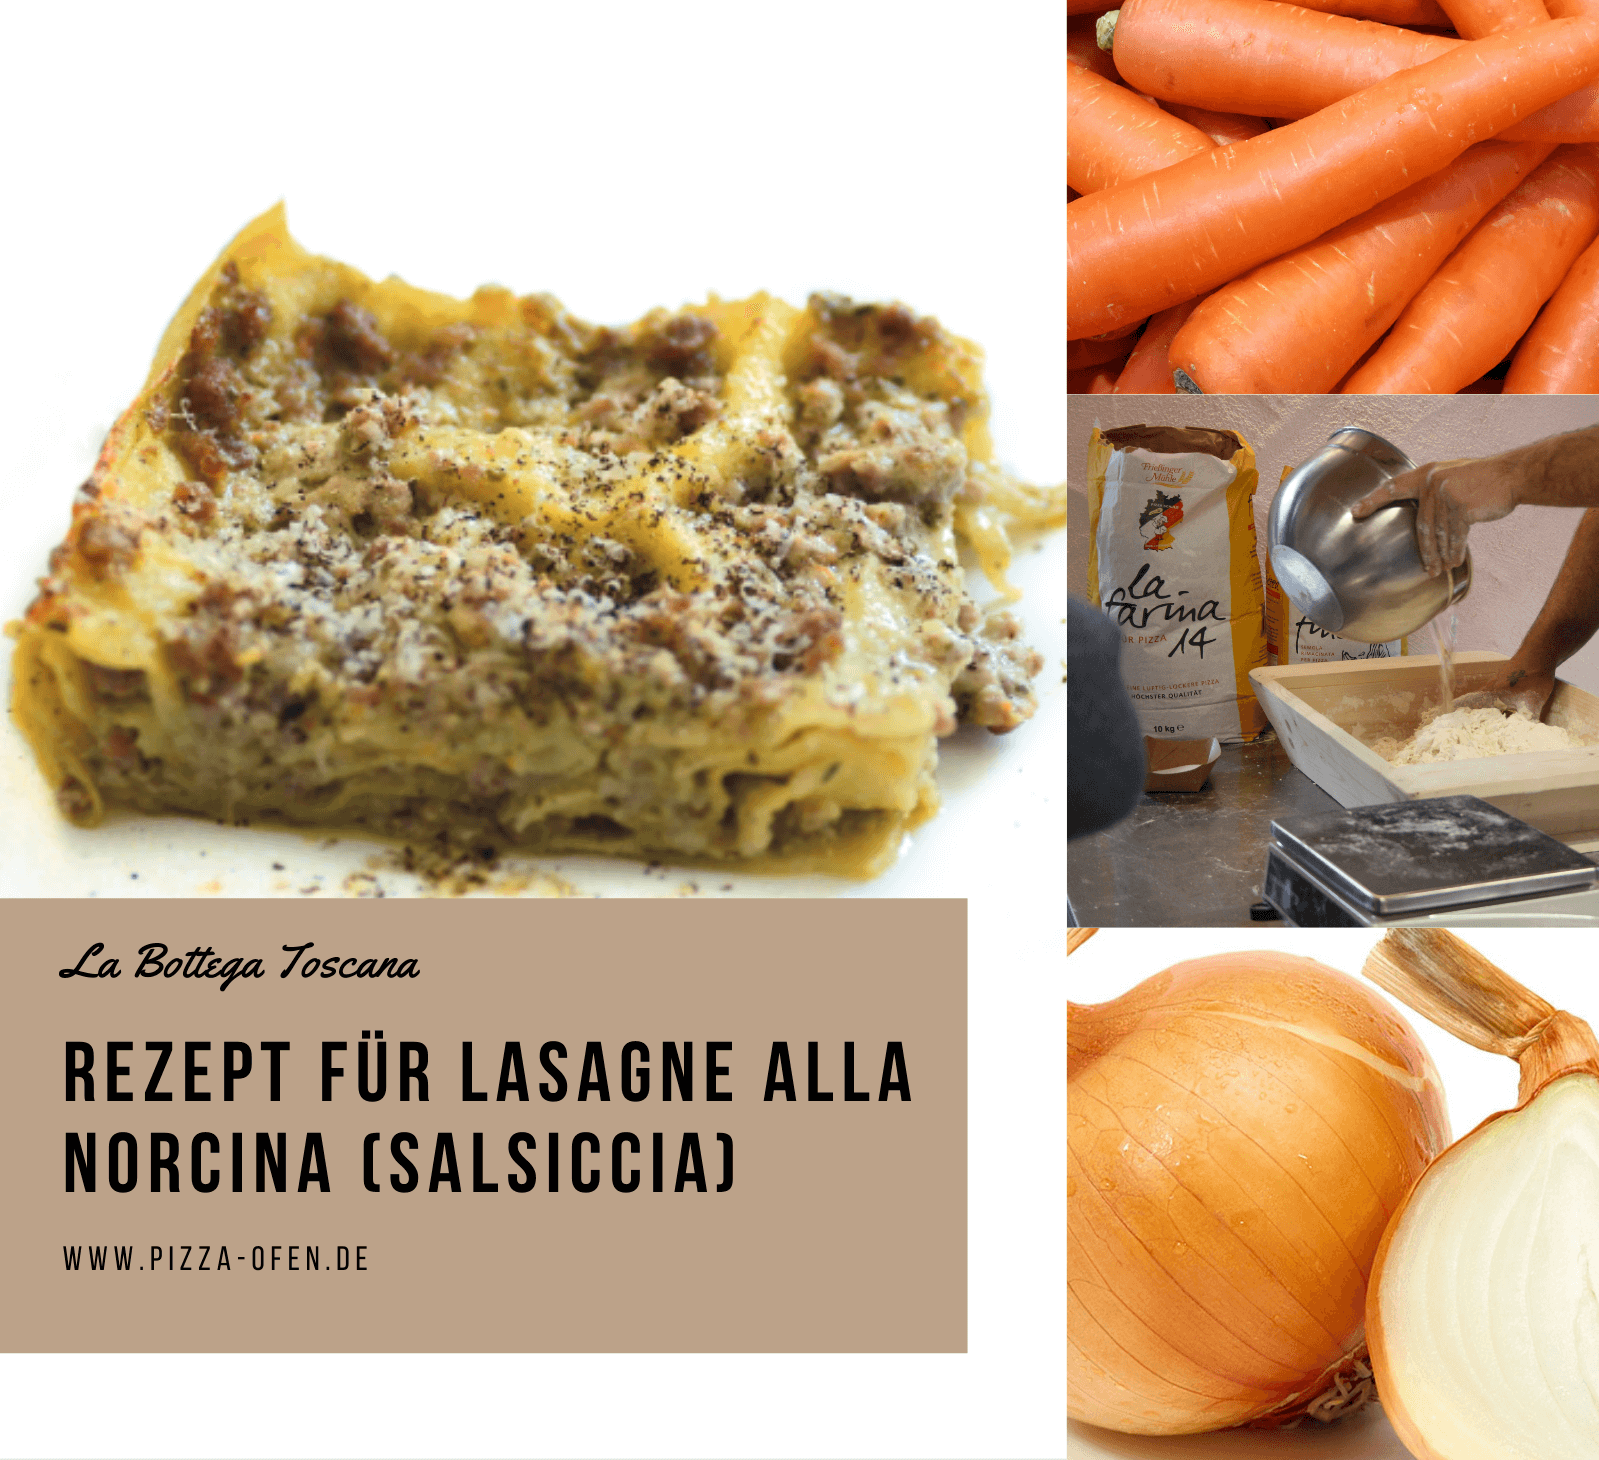 Recipe: Lasagne alla Norcina (Salsiccia)